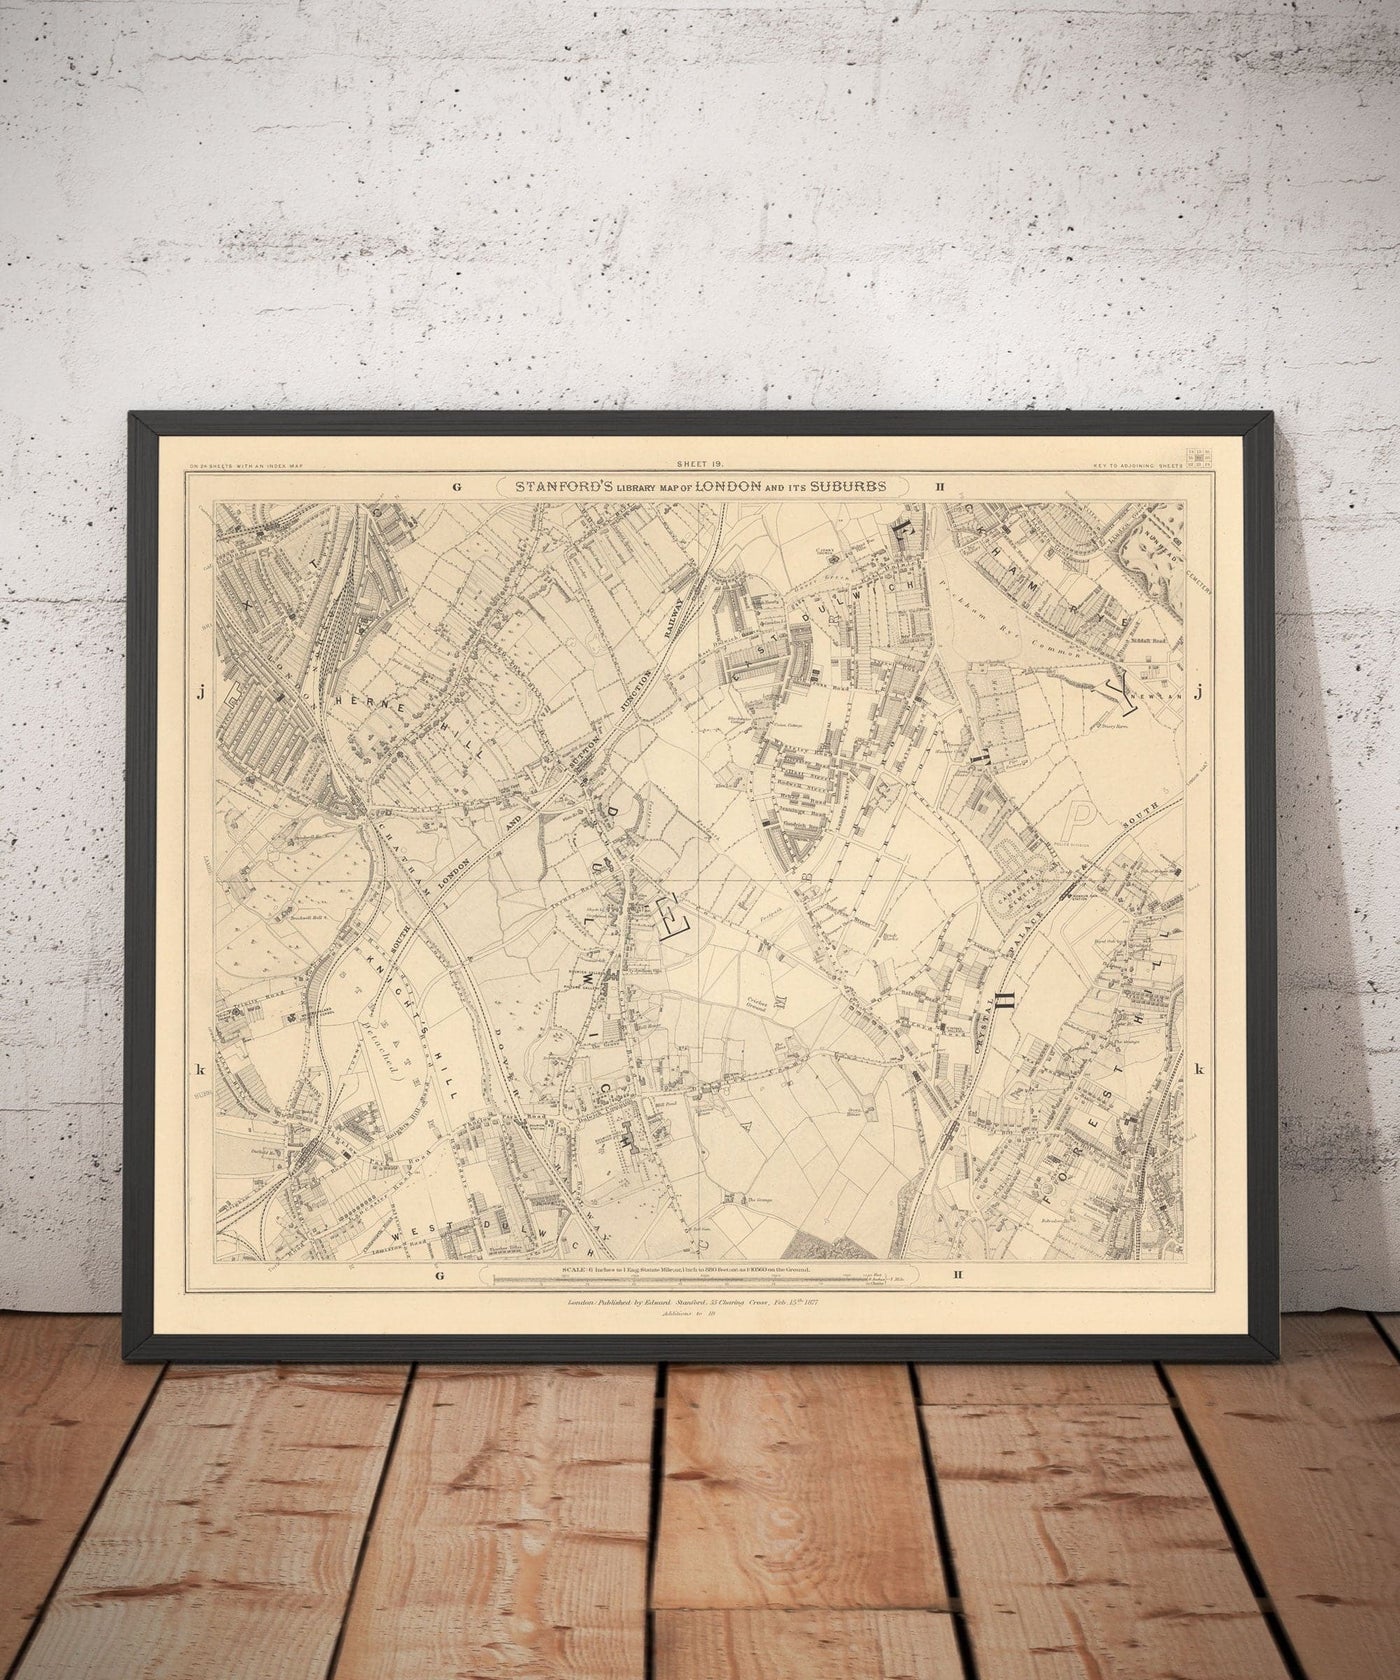 Mapa antiguo de South Londres en 1862 por Edward Stanford - Dulwich, Peckham Rye, Herne Hill, Forest Hill - SE24, SE22, SE21, SE23